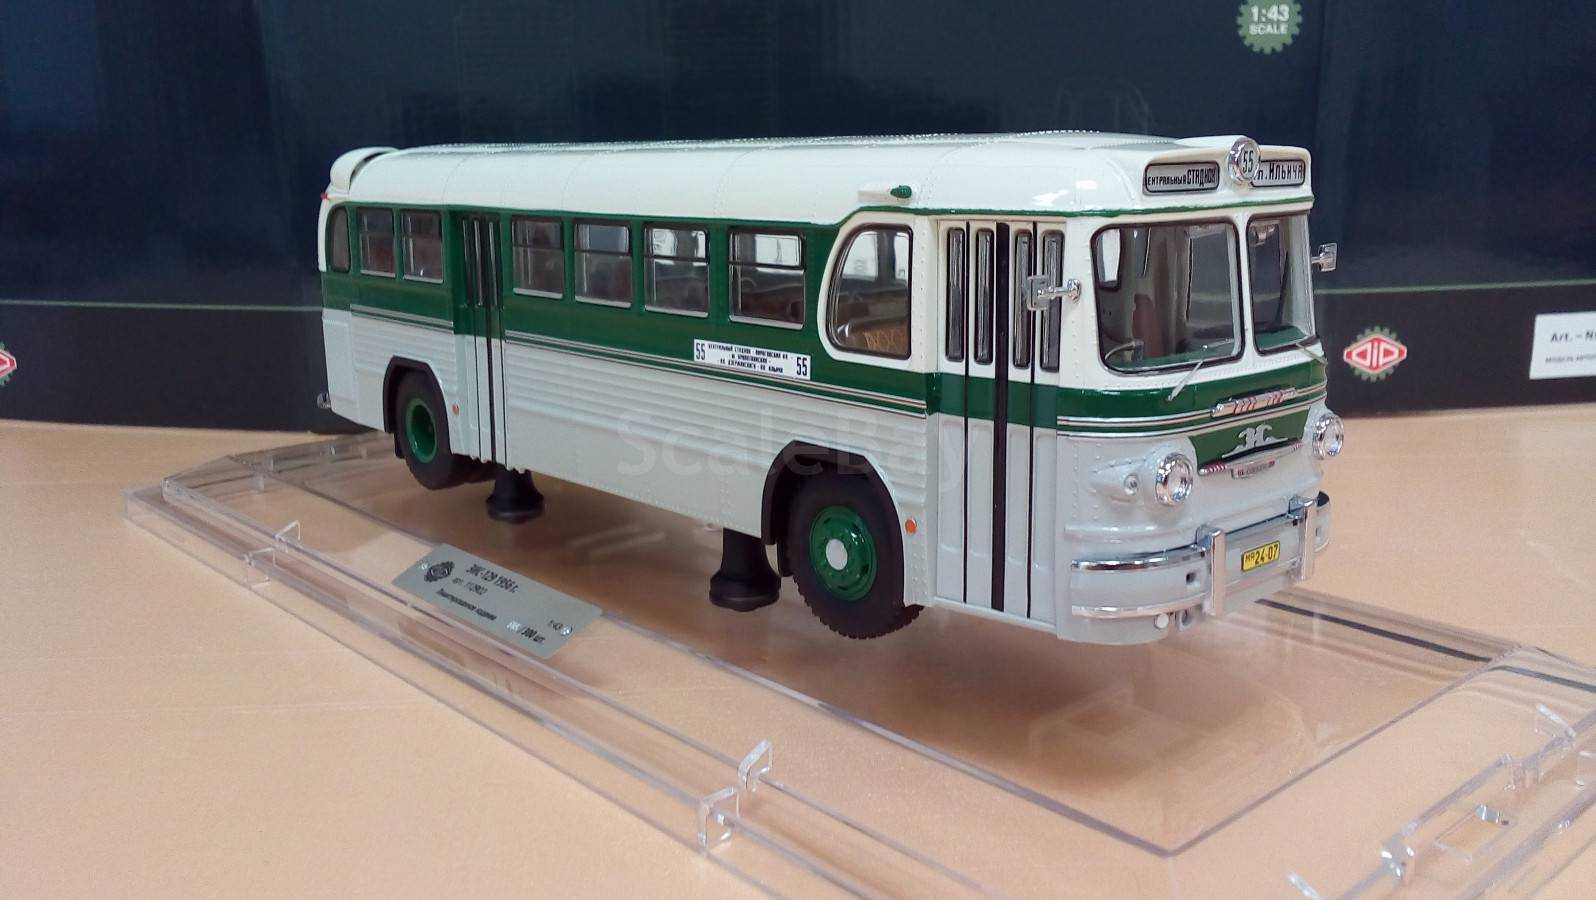 Автобусы зис, модельный ряд: о производителе, 155, 129, 16, 158 и прочие популярные варианты техники, их модификации, описание и устройство, характеристики